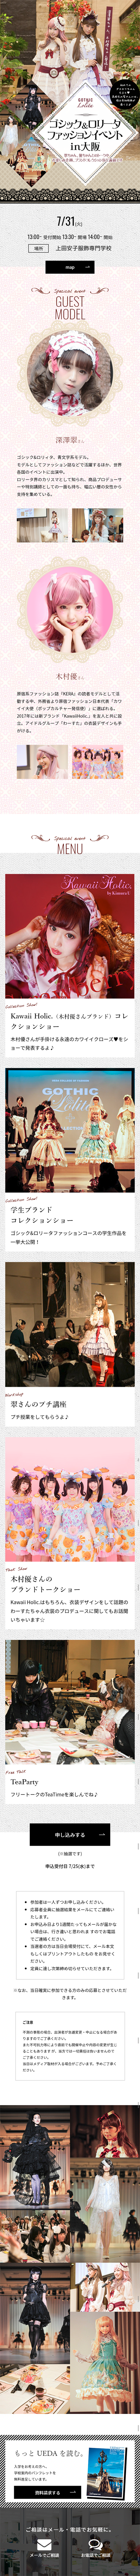 ゴシック&ロリータファッションイベント in大阪_sp_1